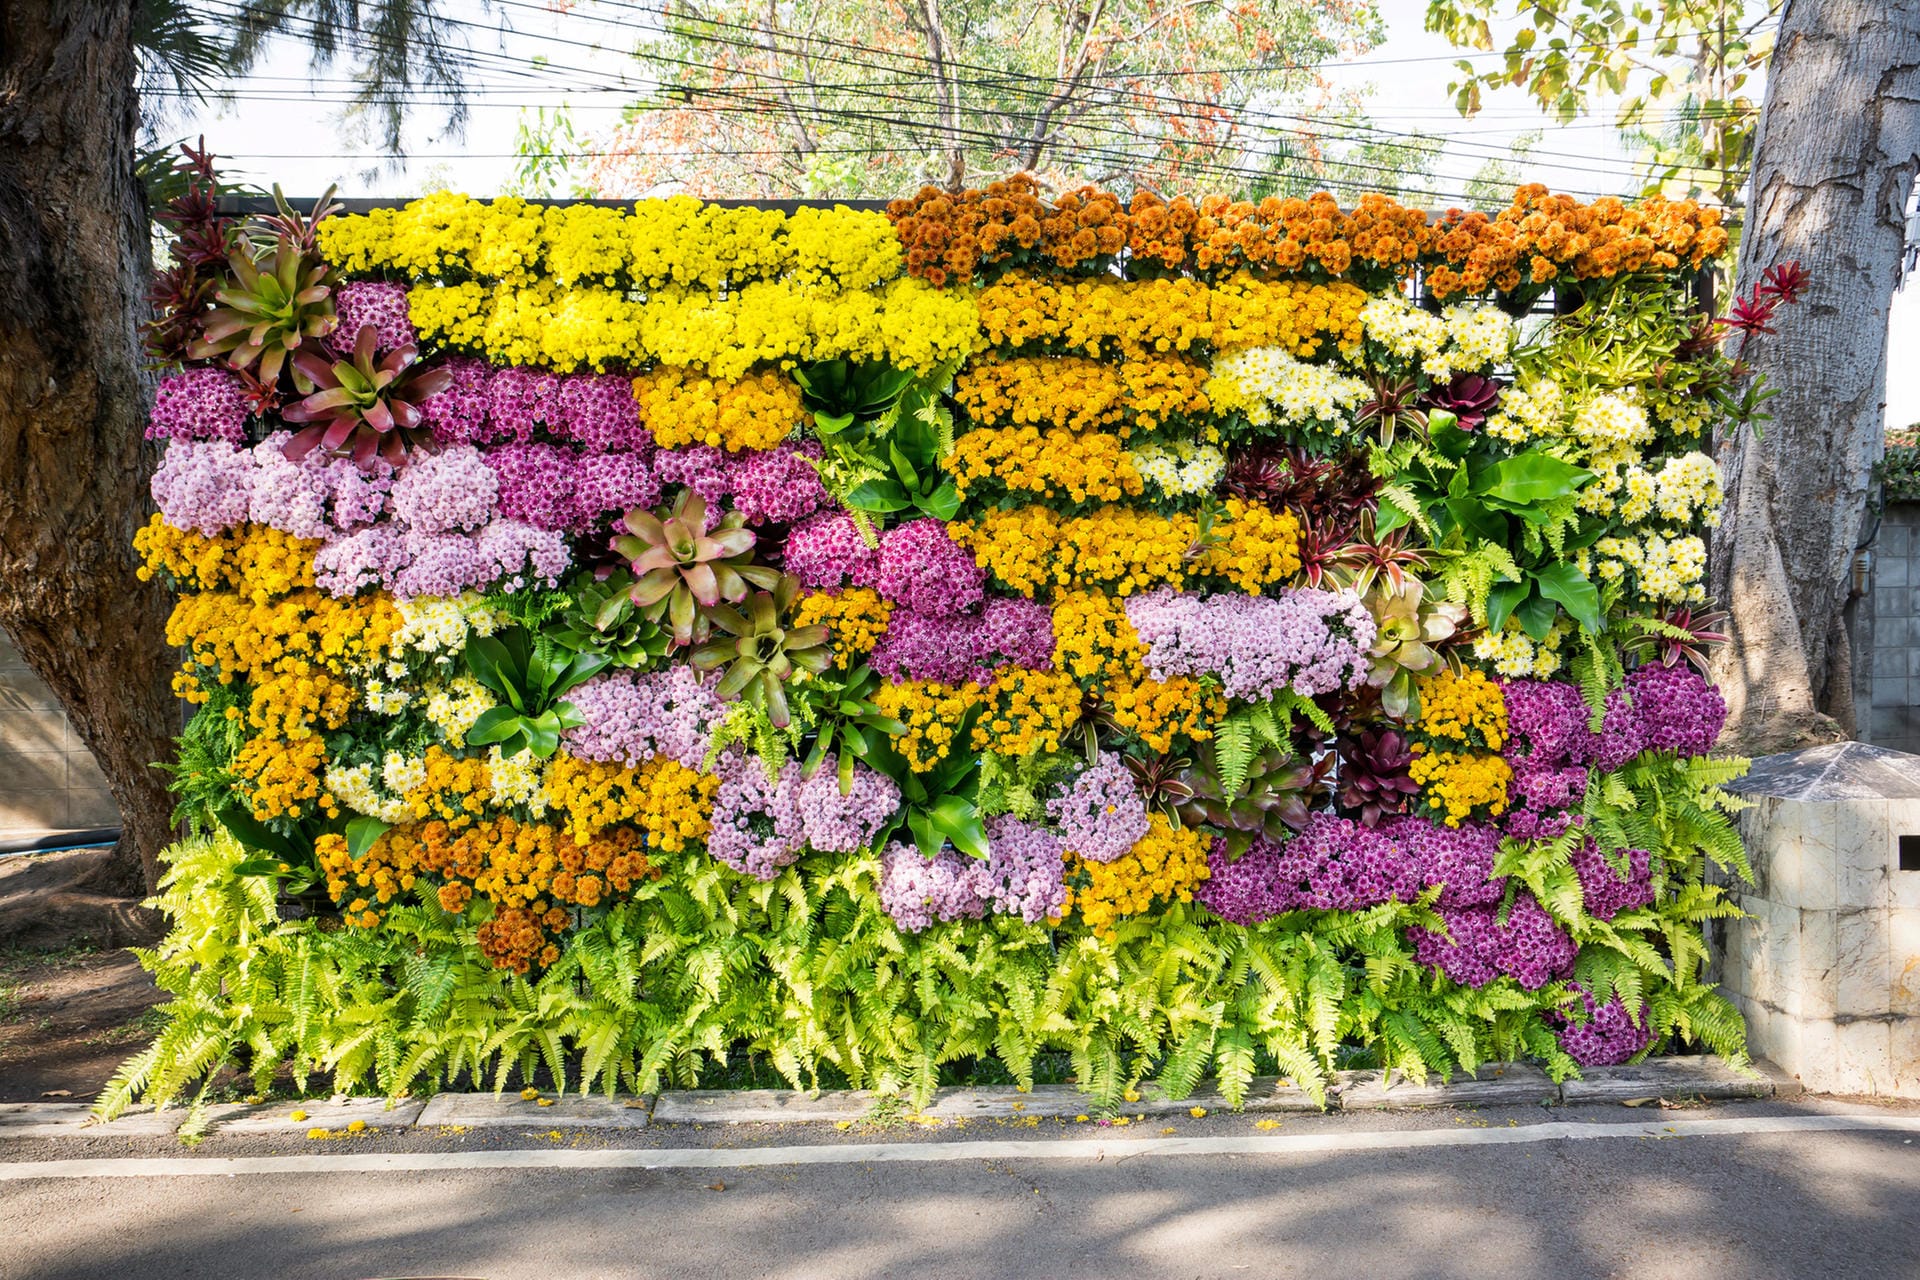 Sichtschutz: Wer es grün mag, kann einen Sichtschutz aus Rankpflanzen aufstellen oder eine Mauer mit Blumen bepflanzen.